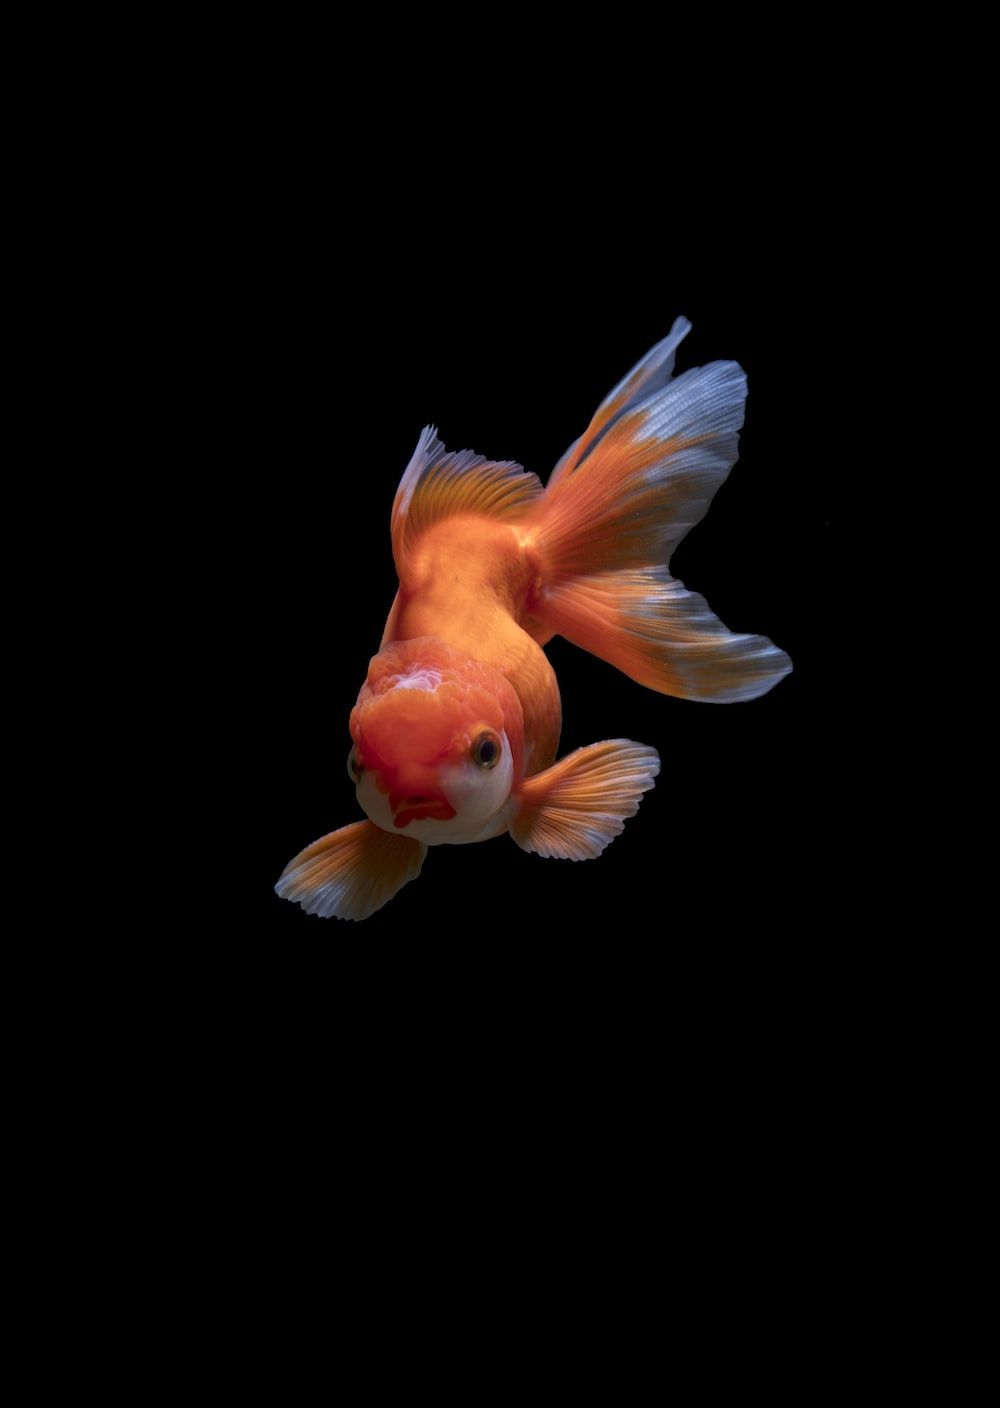  Aquarien Hintergrundbild 1000x1408. Fisch Hintergrundbilder: Kostenloser HD Download [HQ]